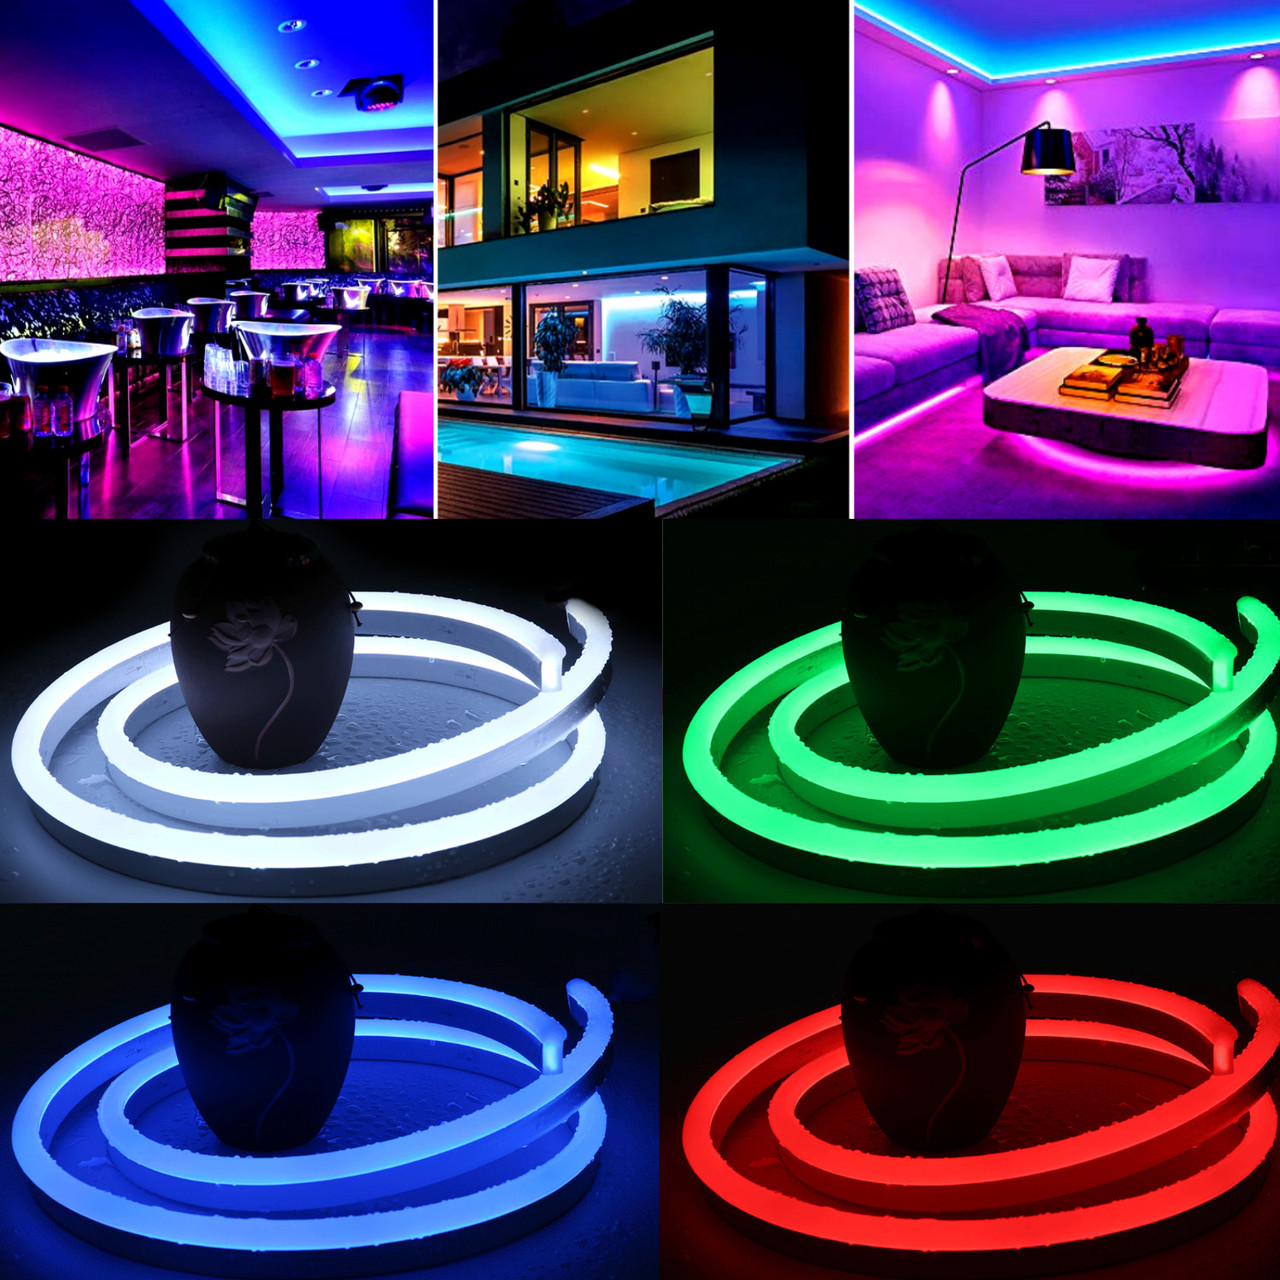 Неоновая светодиодная лента Neon Flexible Strip с контроллером / Гибкий неон 5 м., фото 1